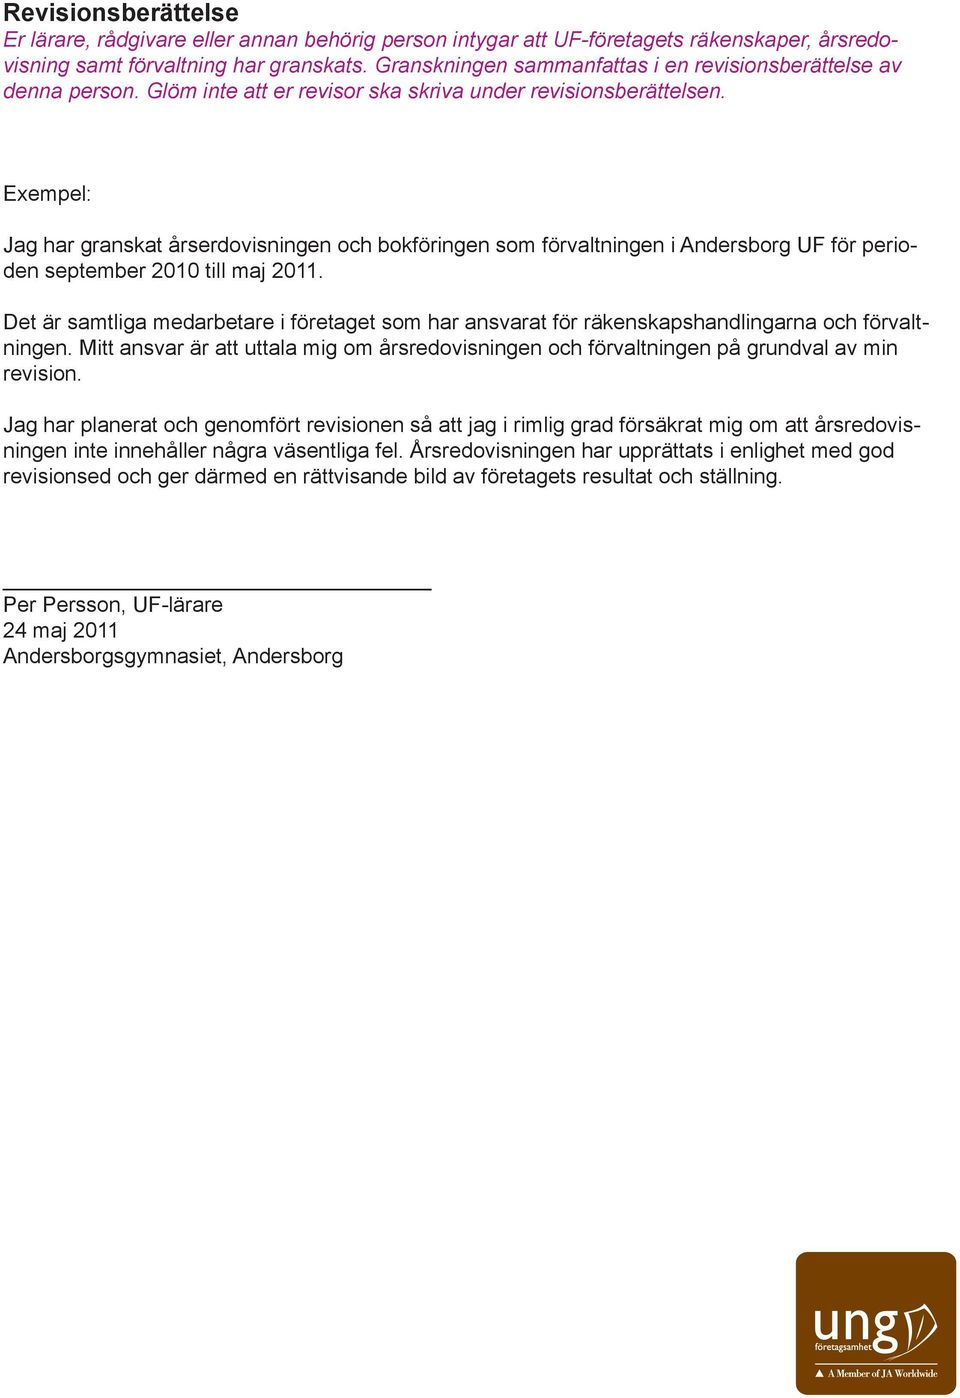 Exempel: Jag har granskat årserdovisningen och bokföringen som förvaltningen i Andersborg UF för perioden september 2010 till maj 2011.